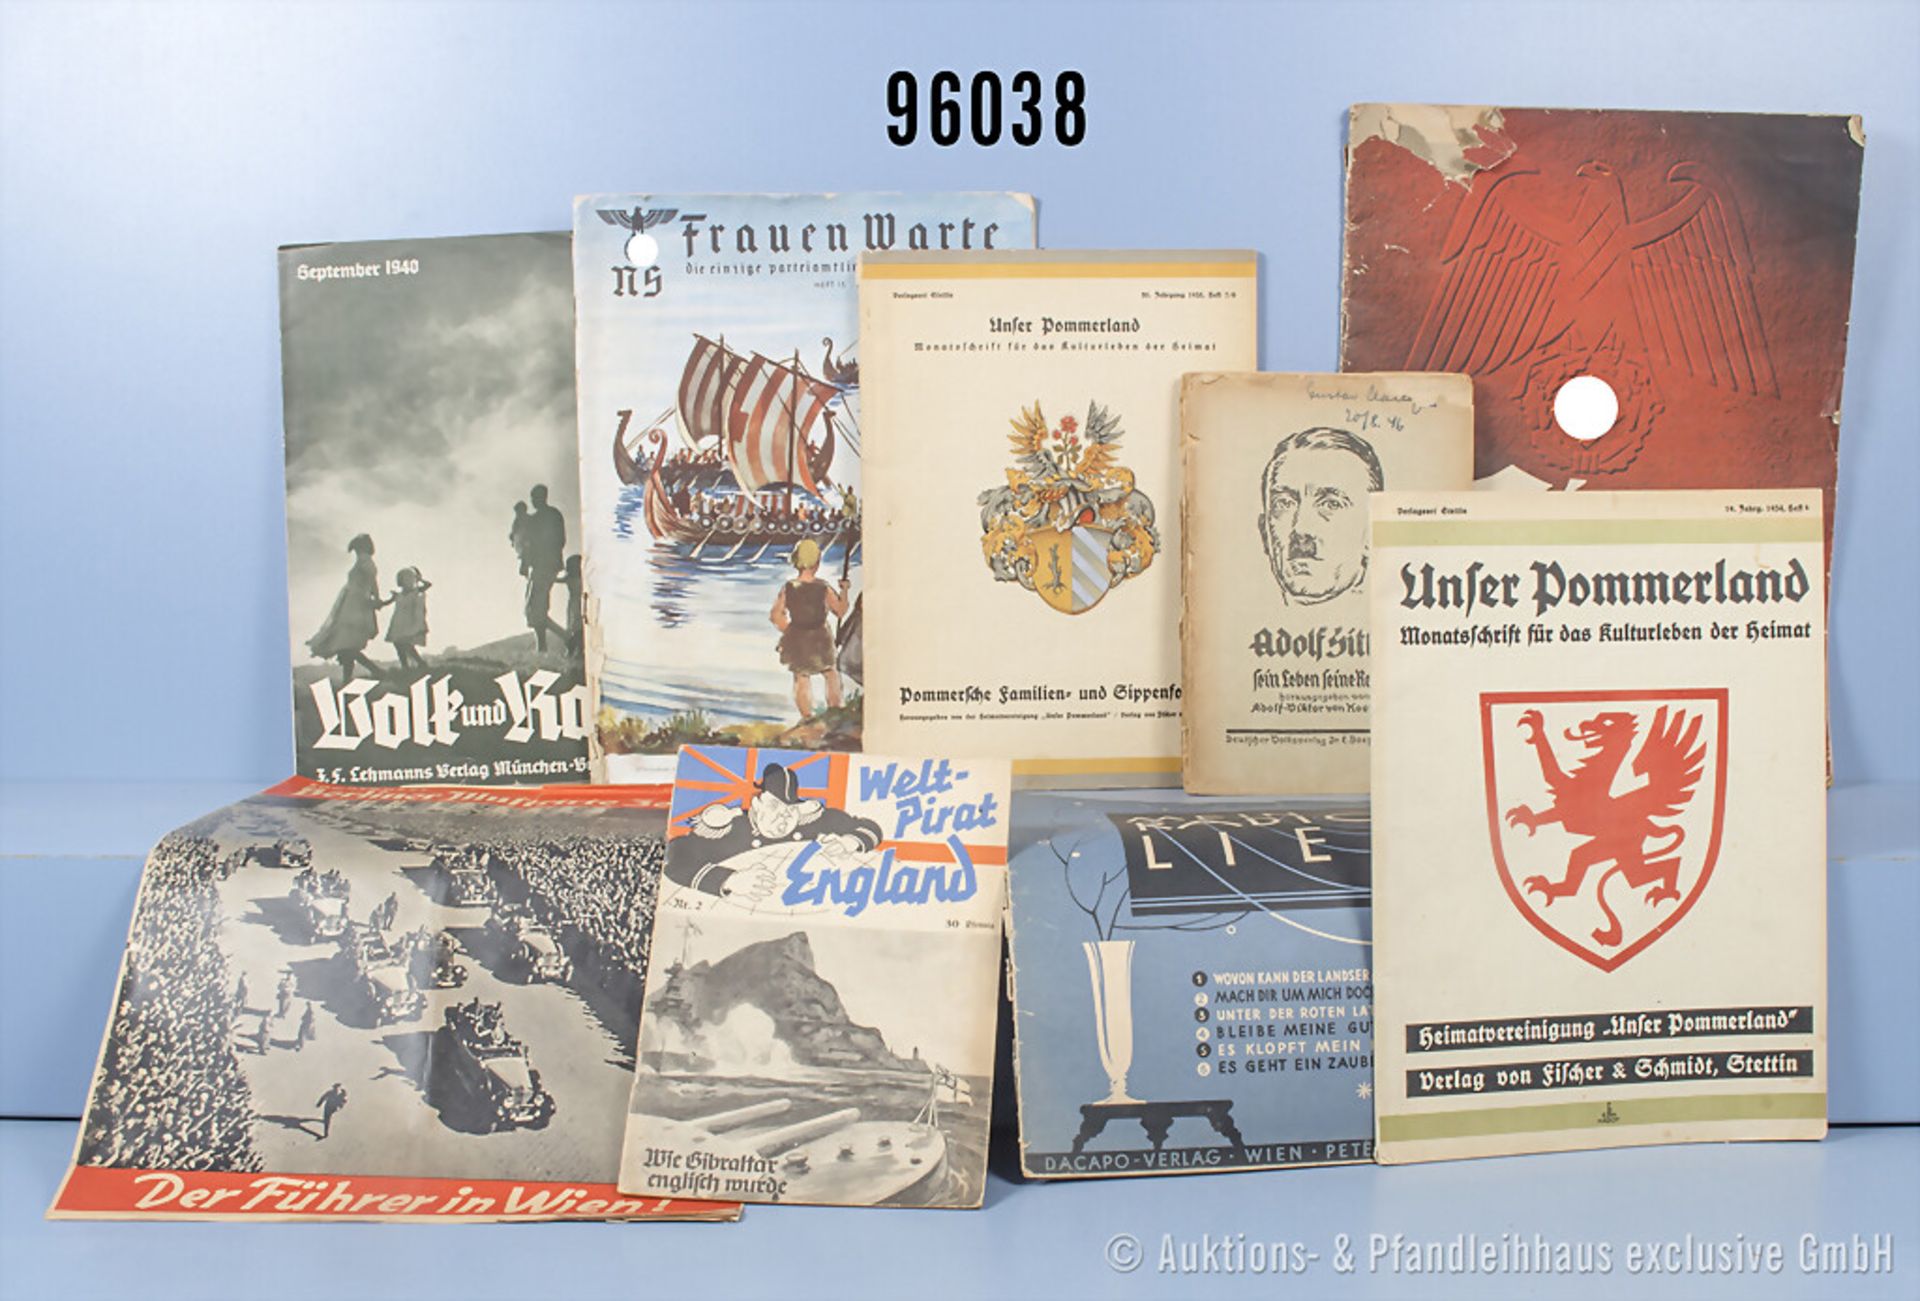 Konv. Zeitschriften und Broschüren 3. Reich, u.a. Broschüre "Adolf Hitler-Sein Leben ...